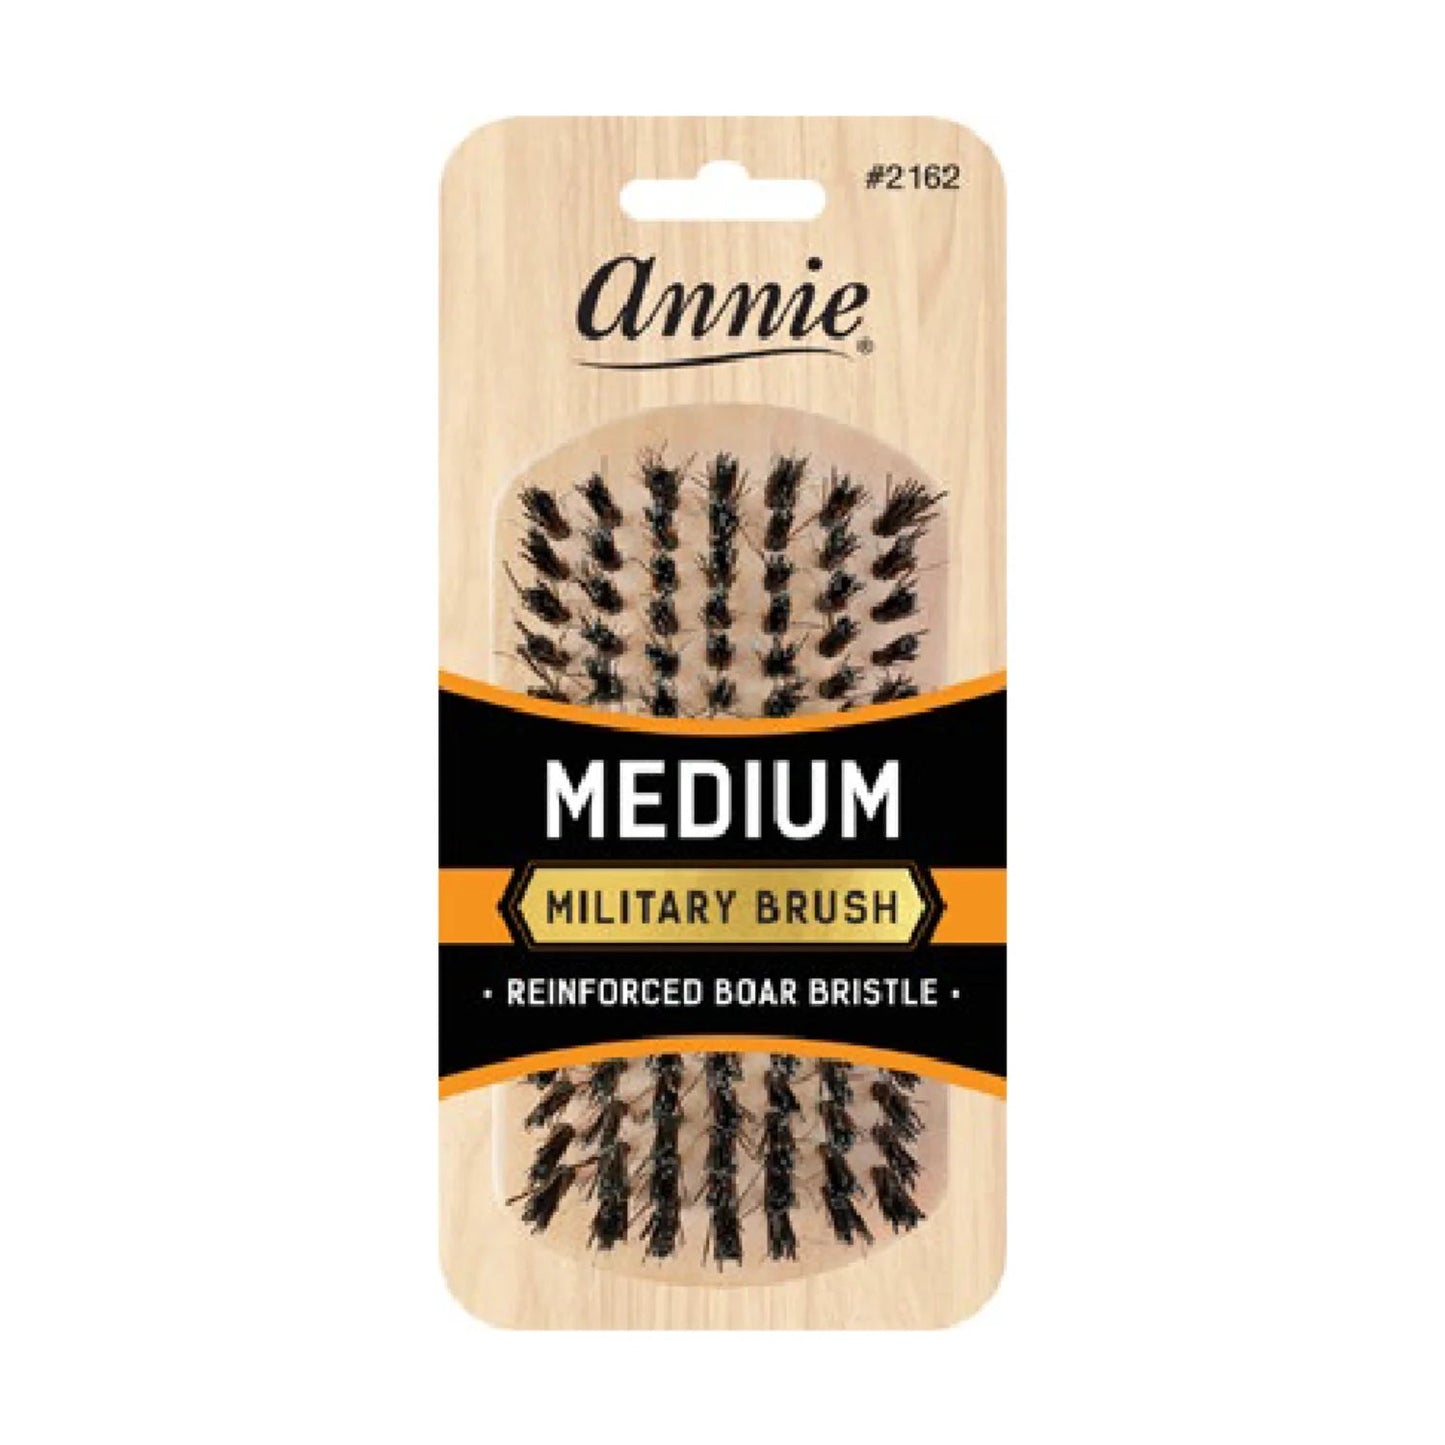 Annie Medium Bristle Military Brush